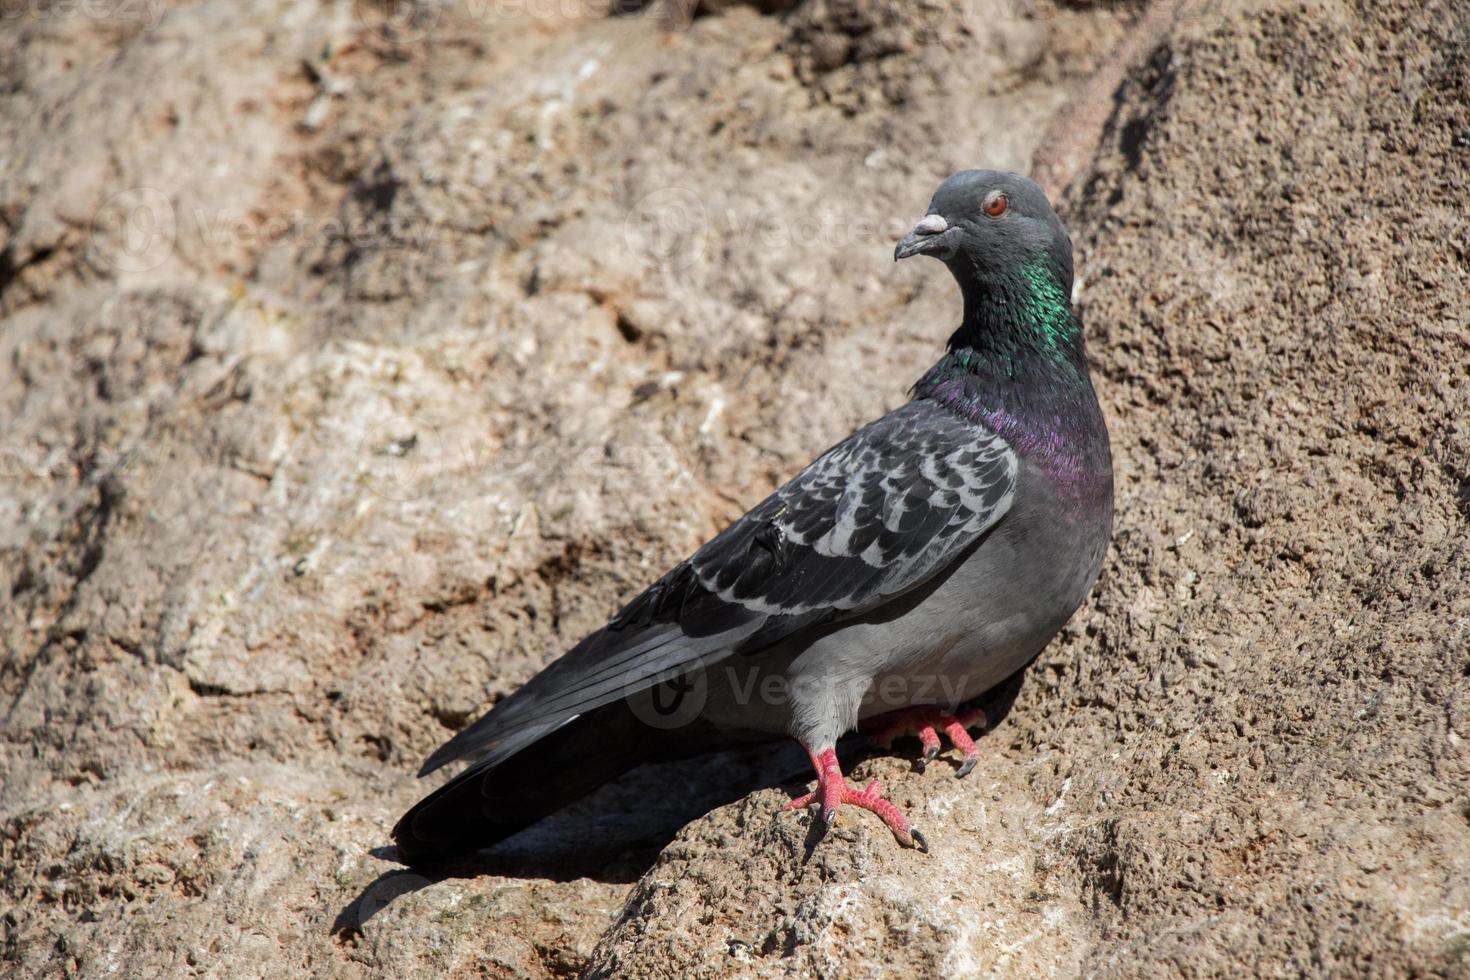 seul pigeon assis sur le rocher photo